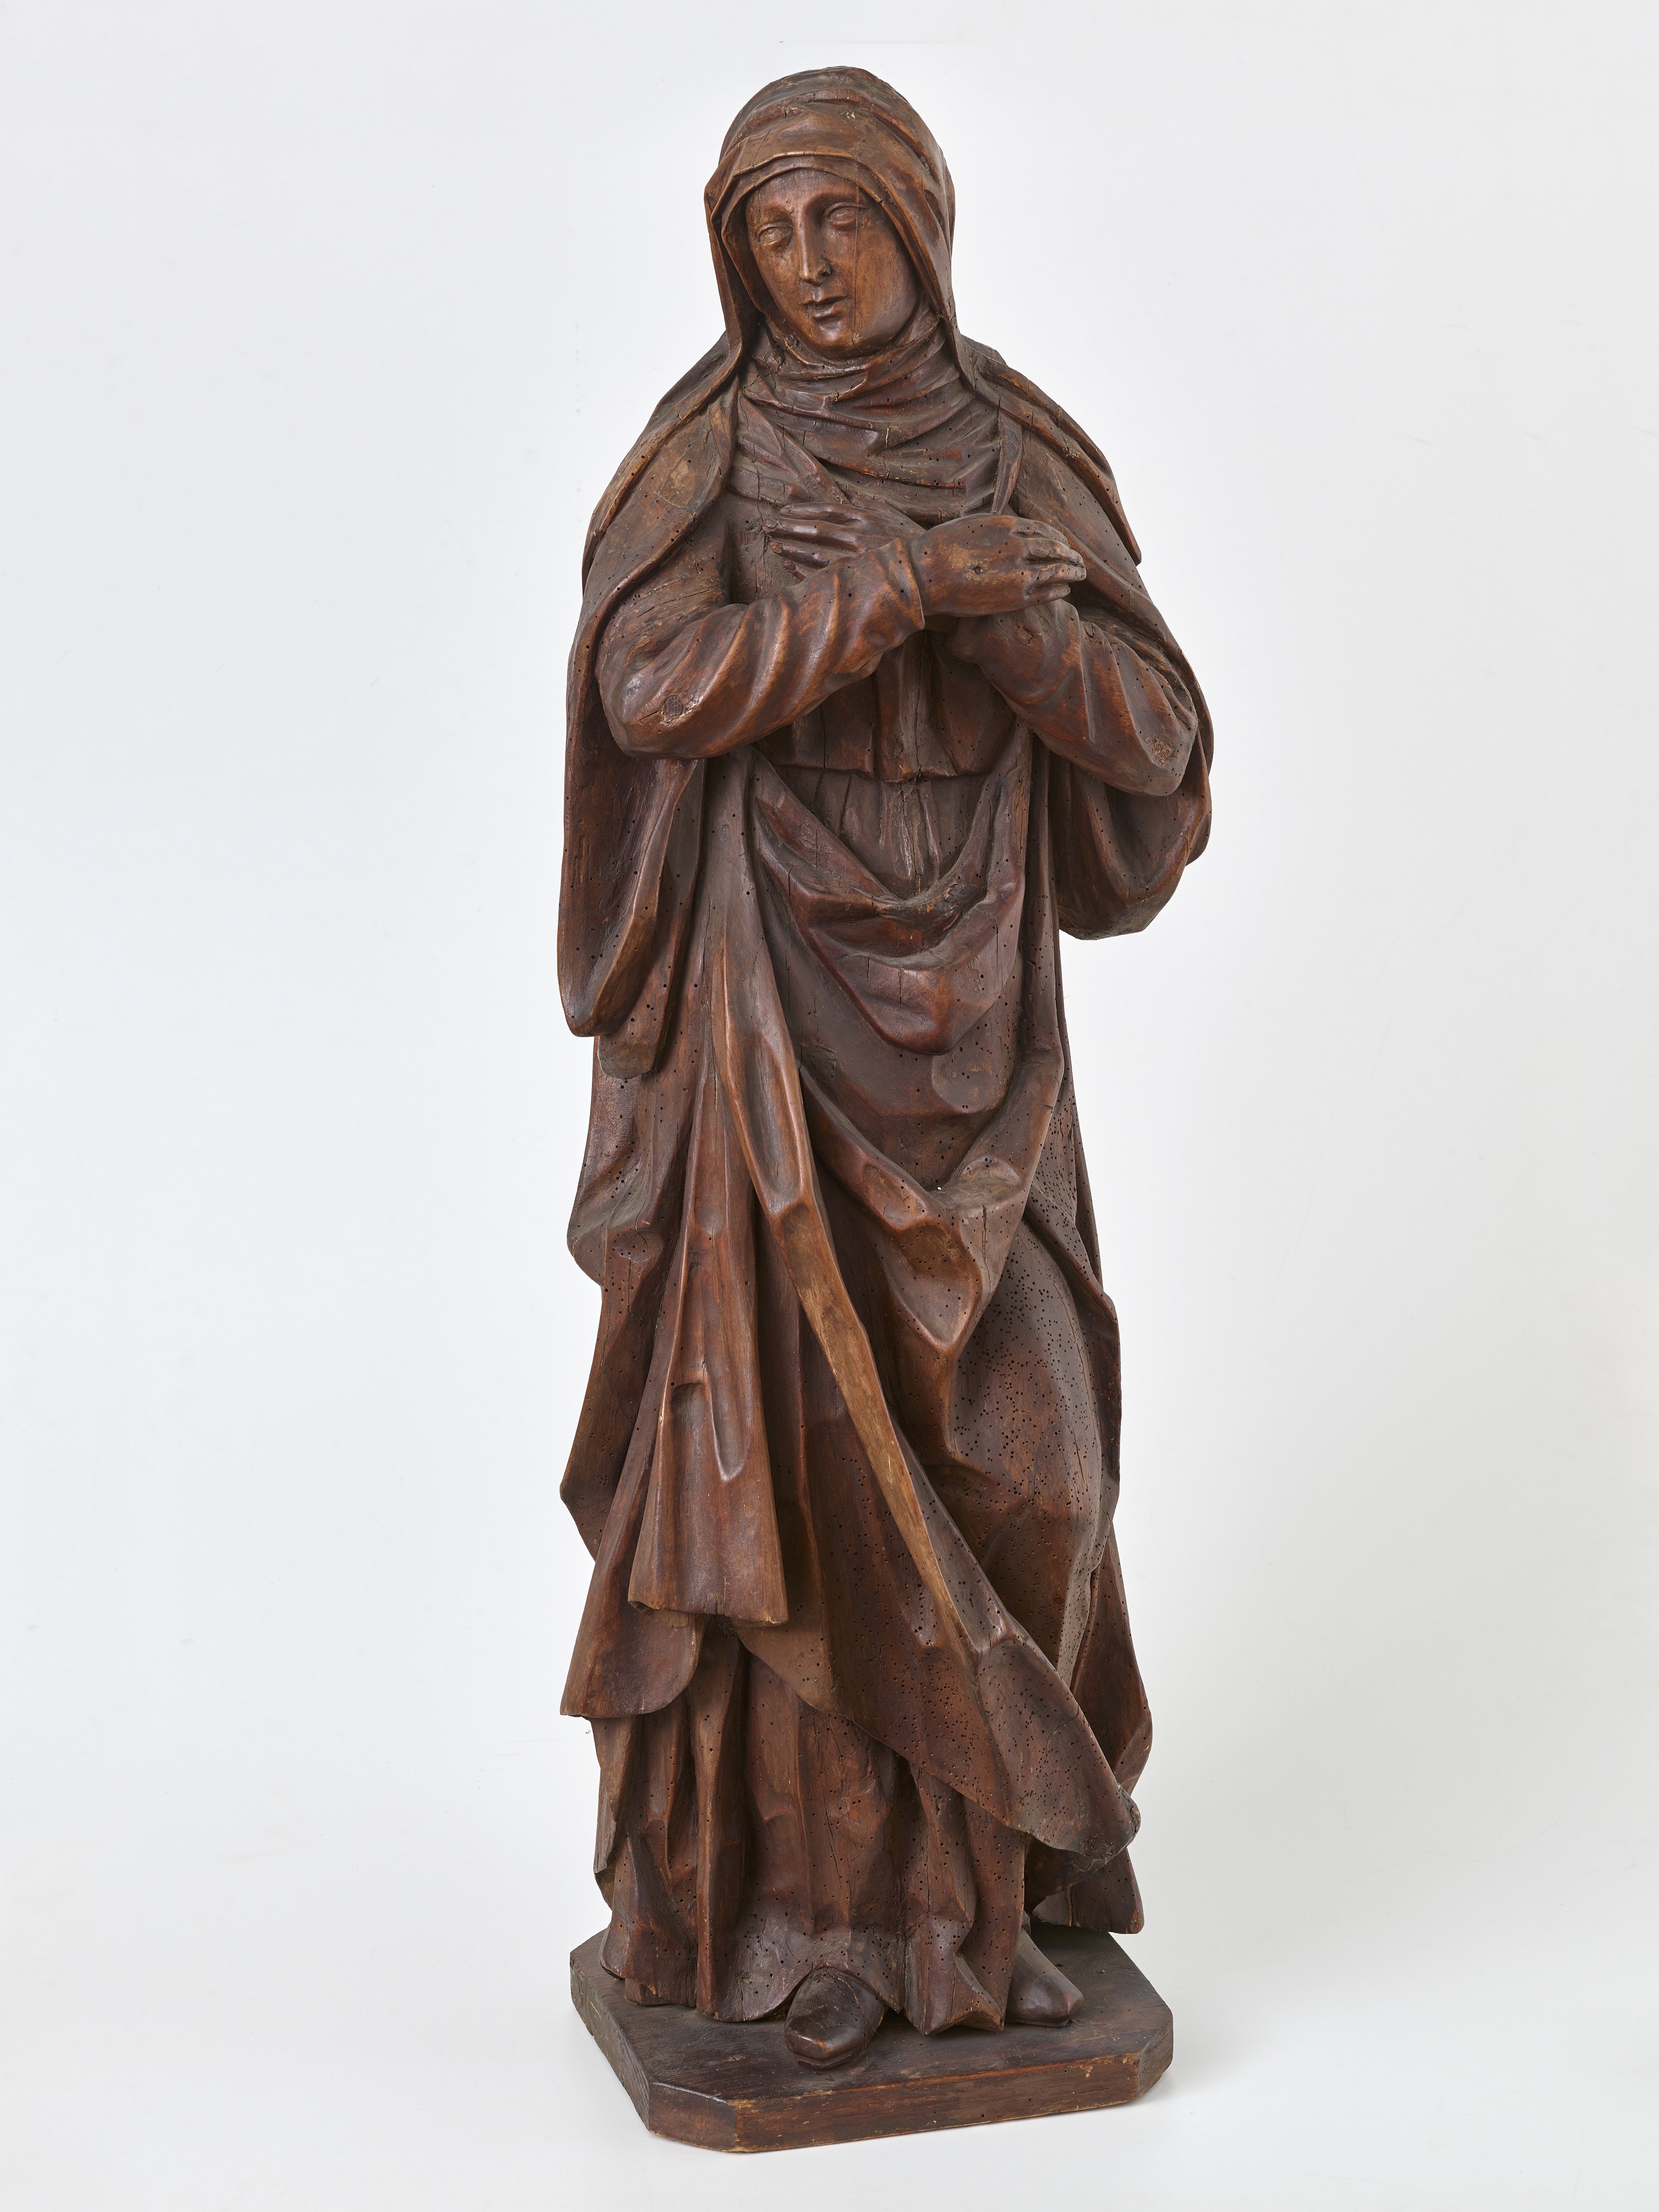 Madonna einer Kreuzigungsgruppe, 16. Jh. (Städtisches Museum Schloss Rheydt CC BY)